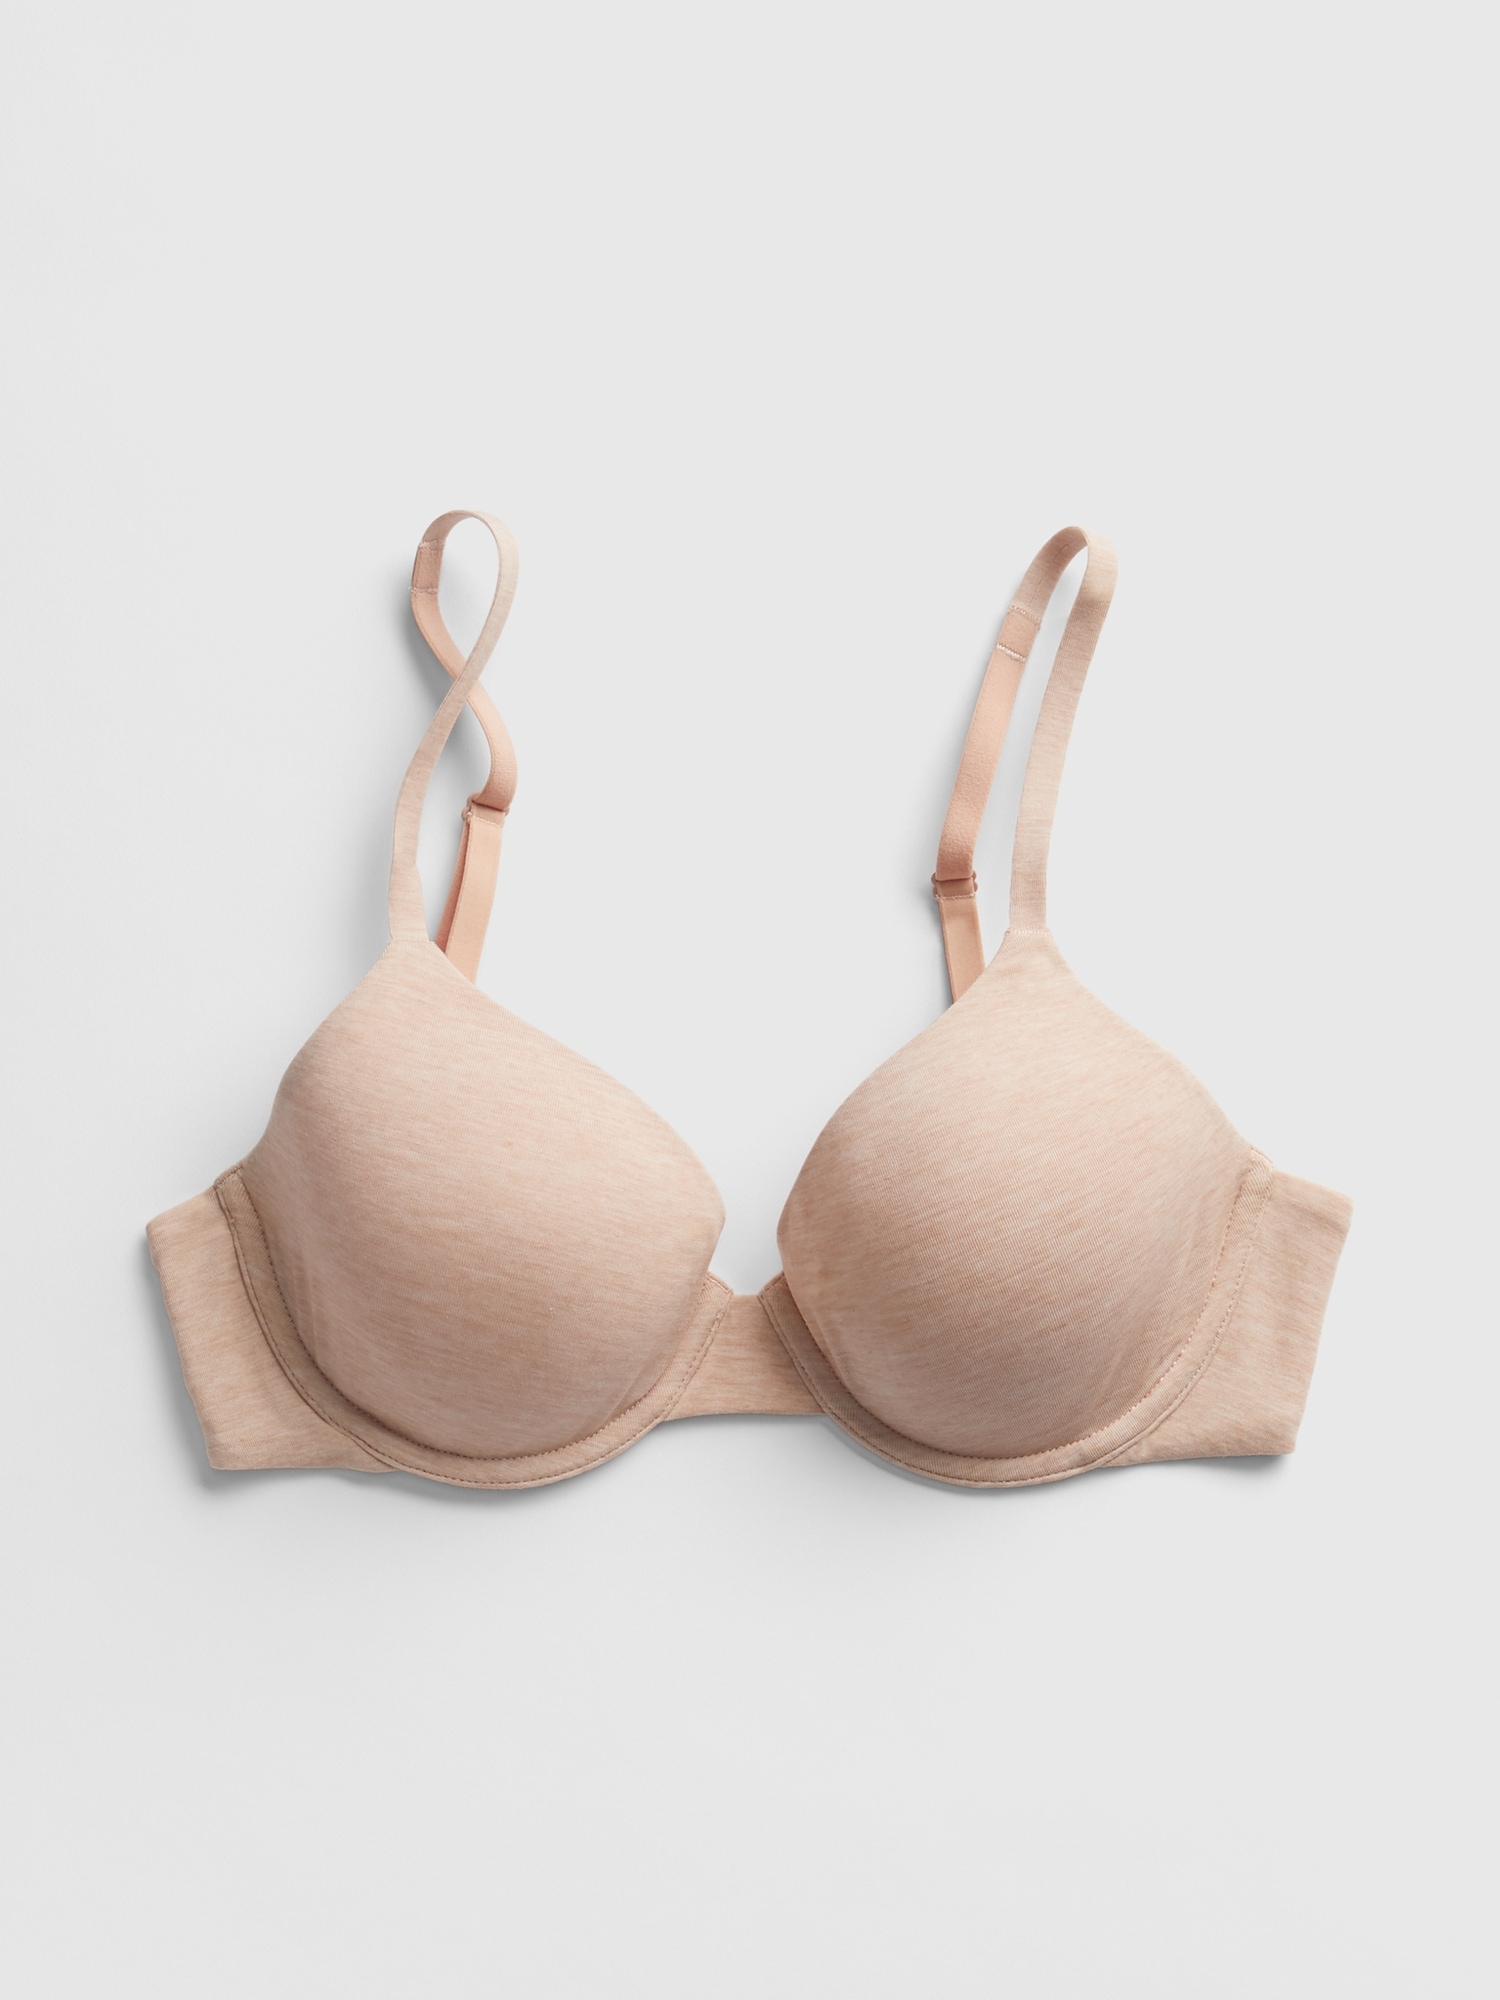 4/$25 Victoria's Secret lined semi bra size 34dd